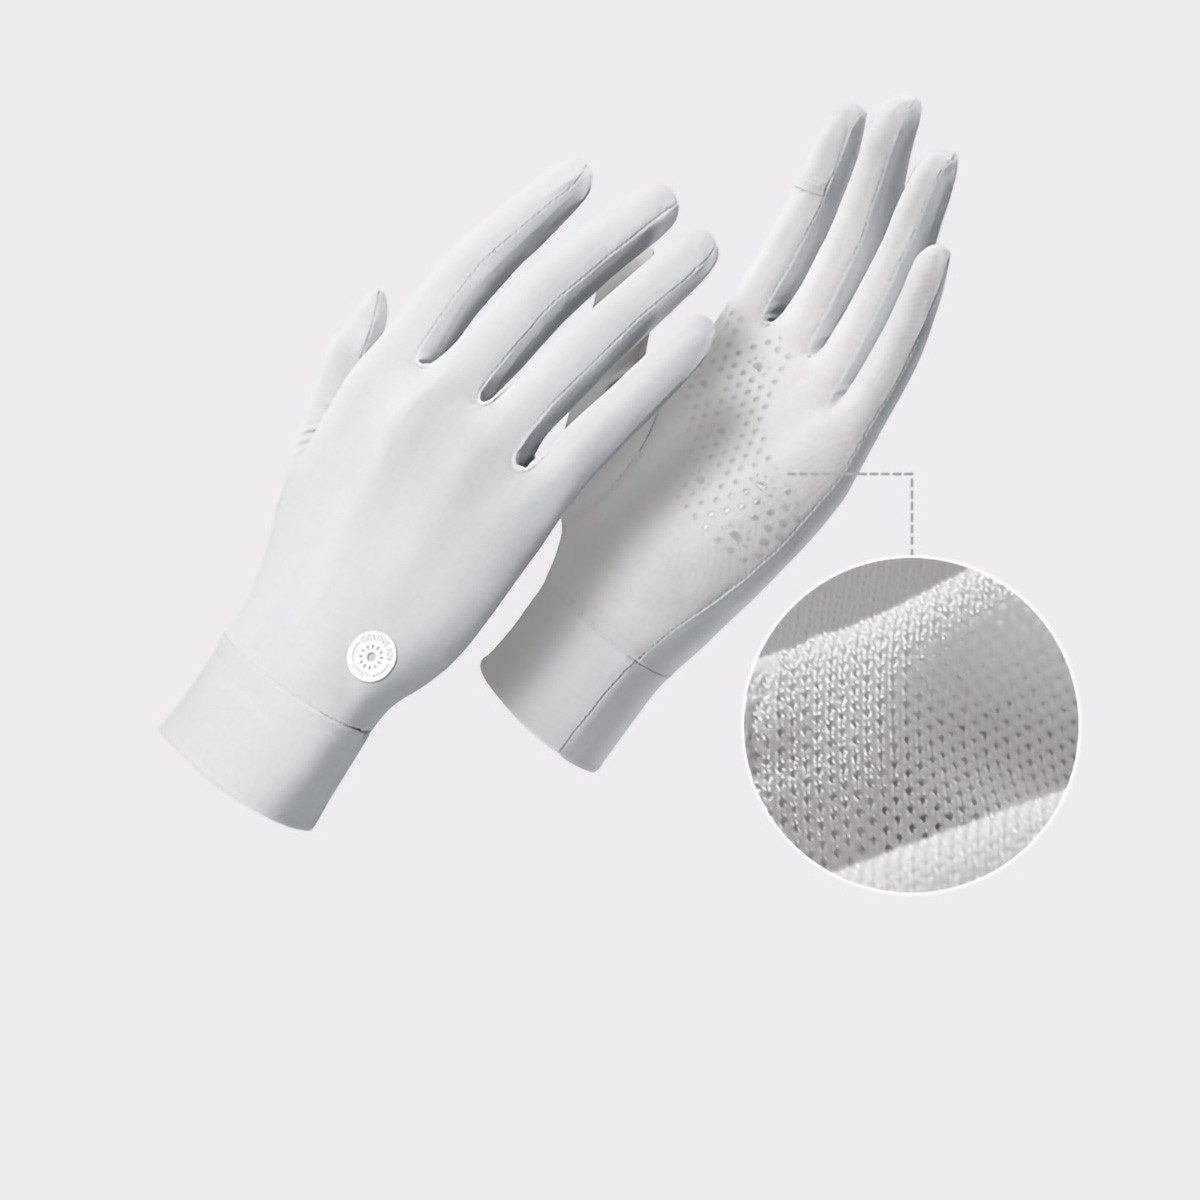 yozhiqu Reithandschuhe Atmungsaktive Eisgefühl Sonnenschutz-Handschuhe,Outdoor-Fahrhandschuhe mit UPF 50, atmungsaktive Touchscreen-Anti-Rutsch-Anti-UV-Handschuhe